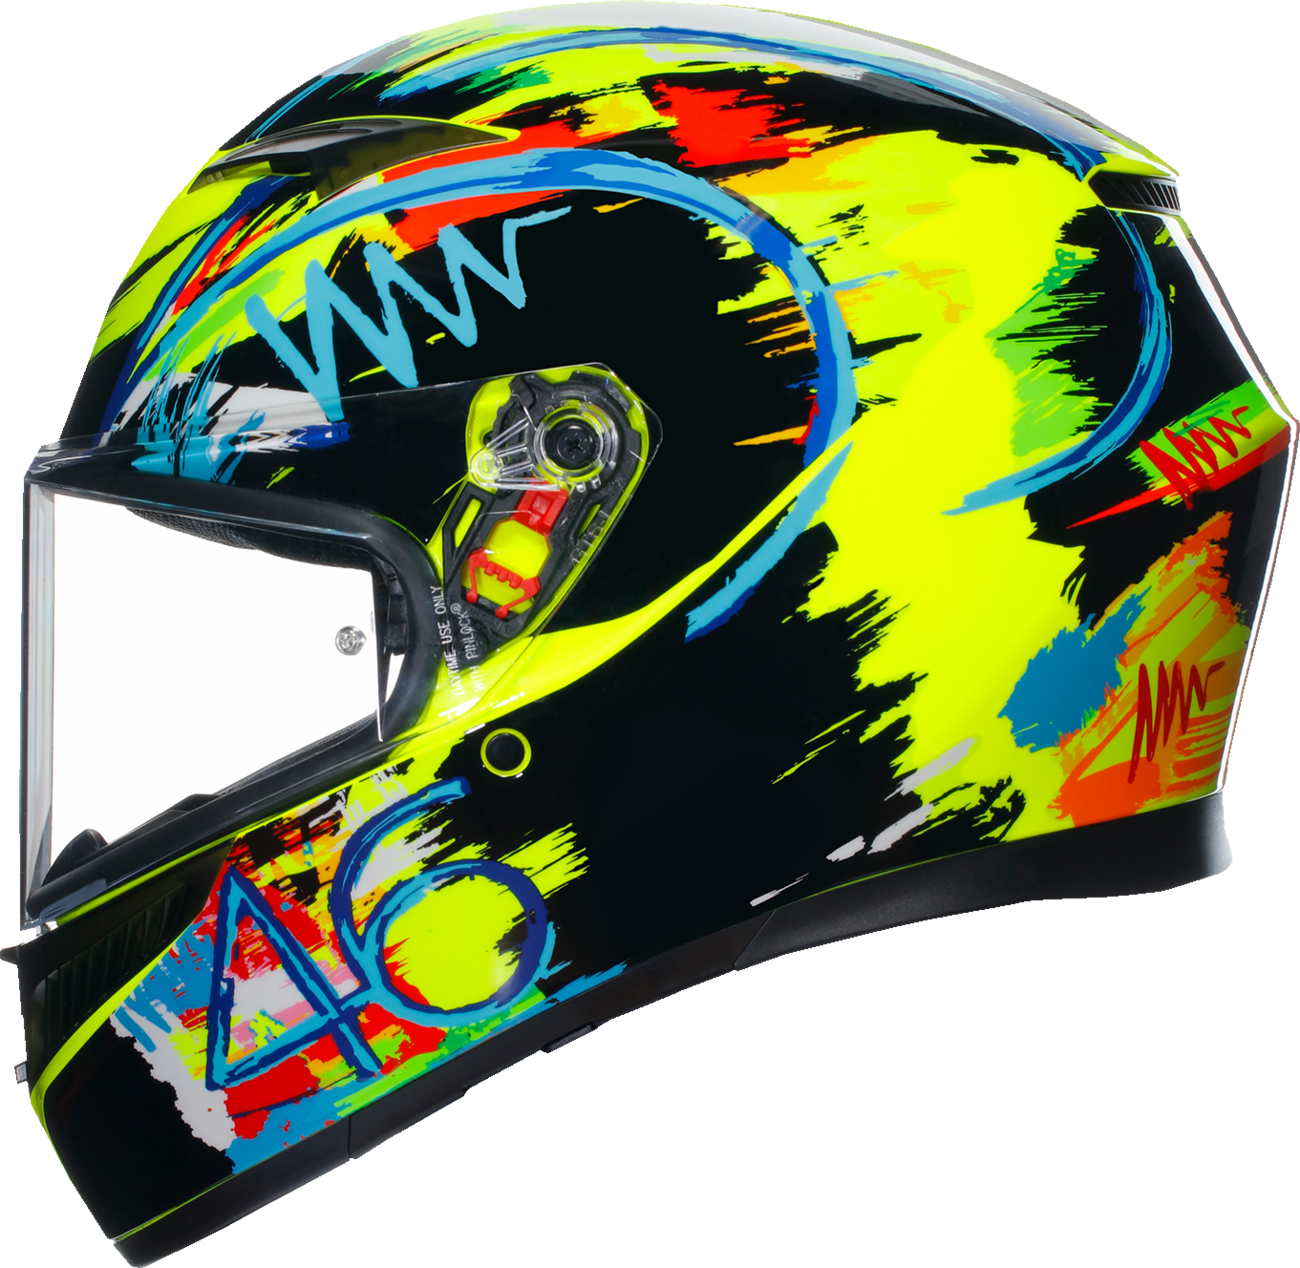 AGV K3 Helmet - Rossi Winter Test 2019 - Large 2118381004003L